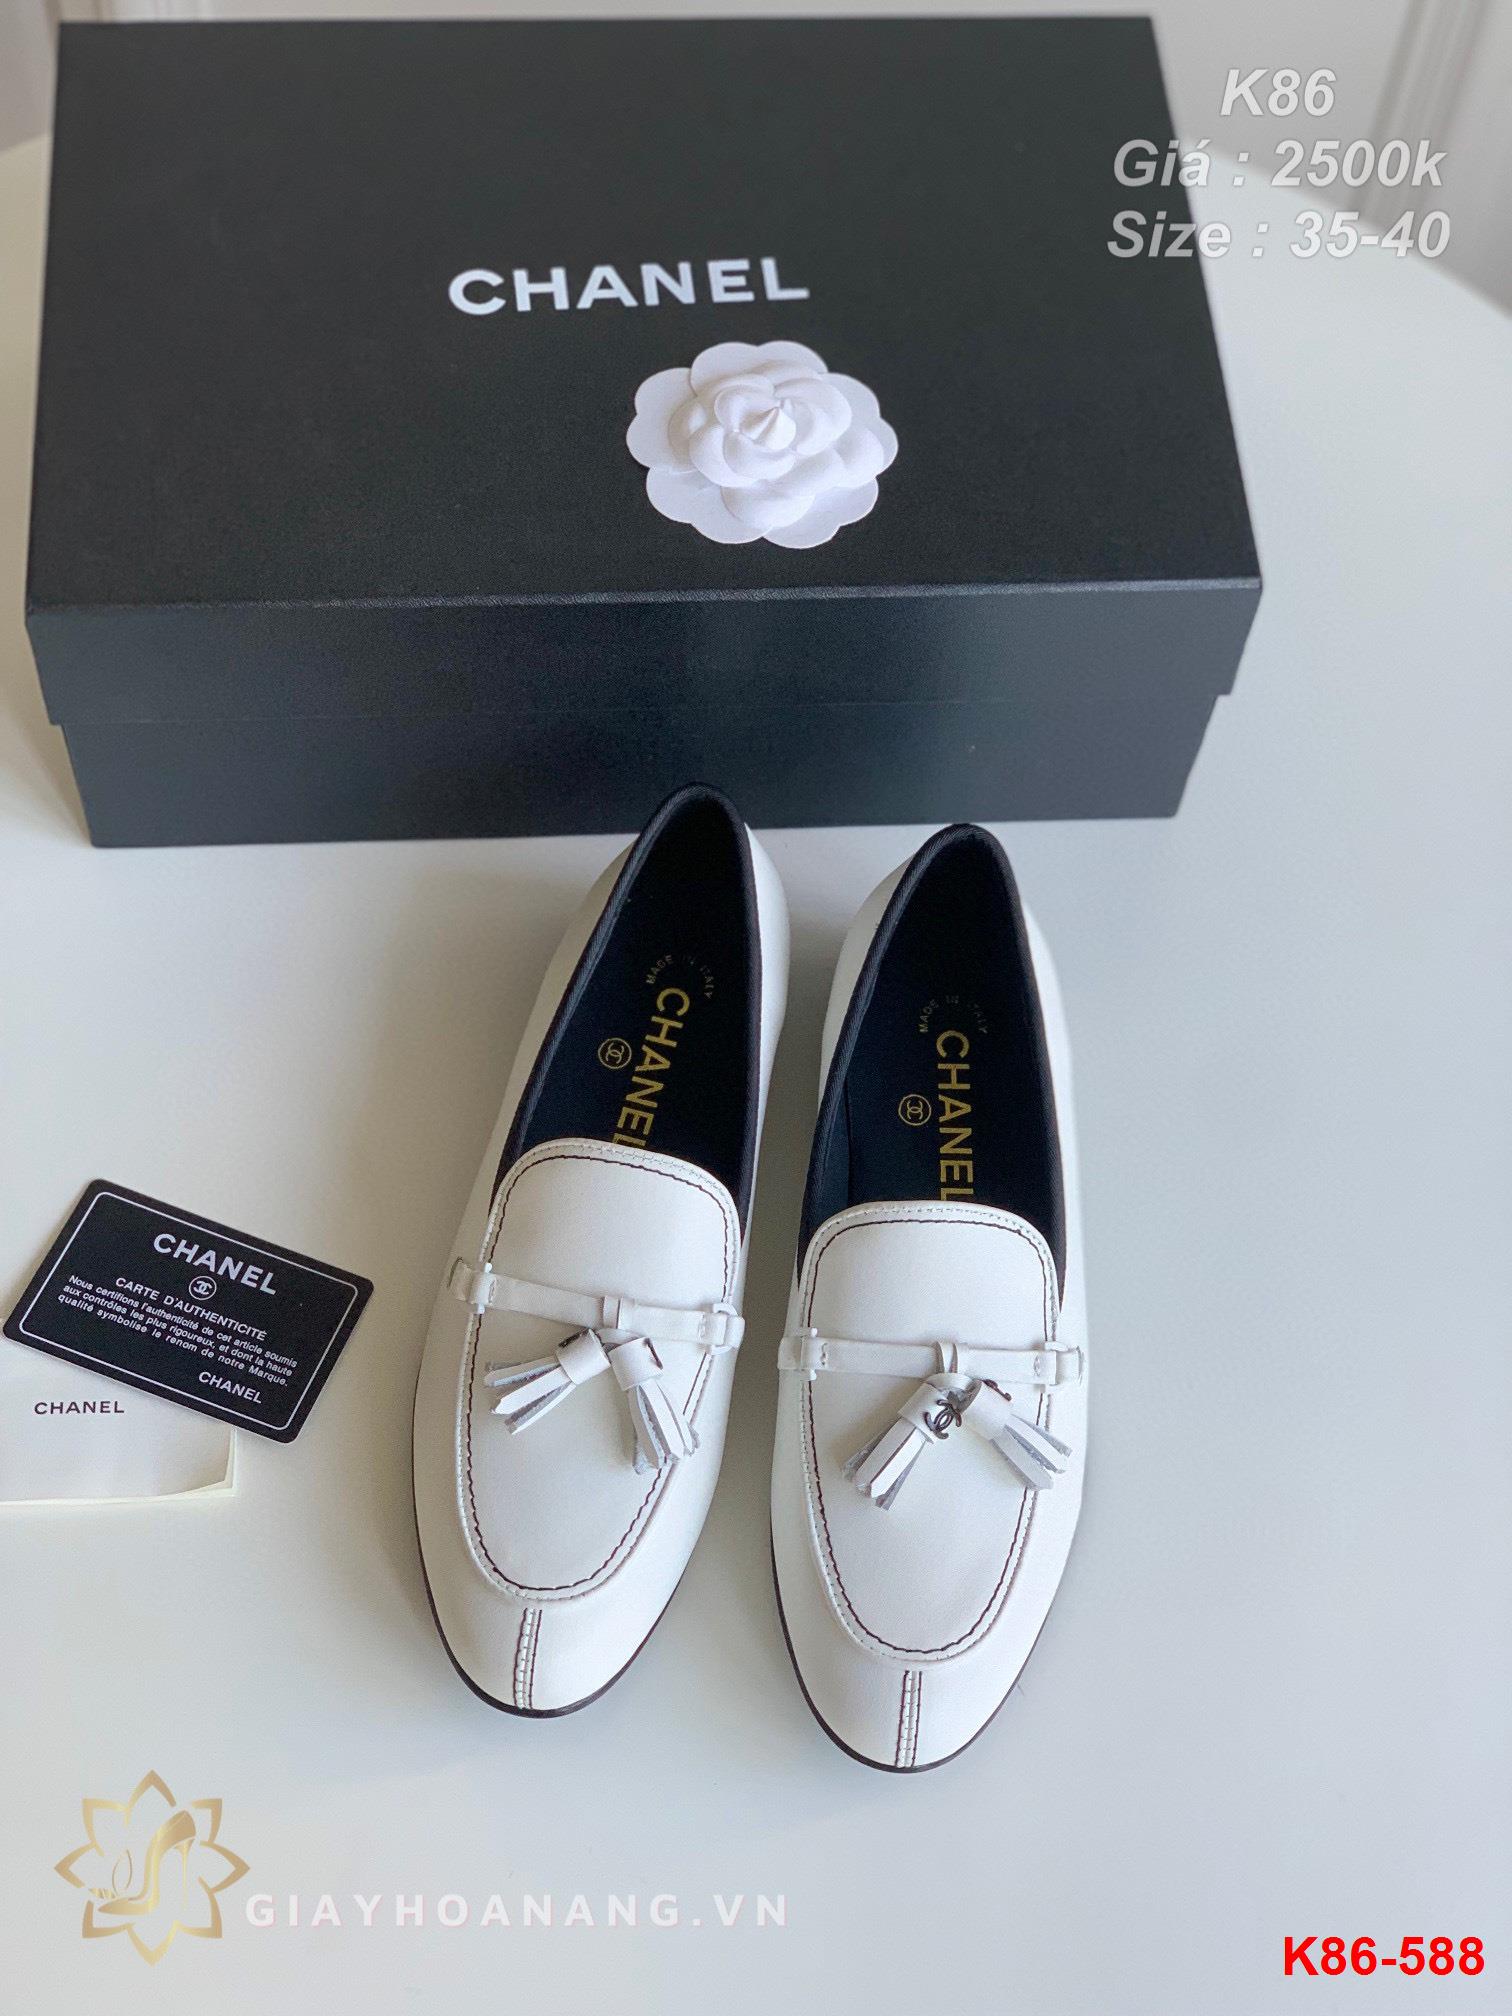 K86-588 Chanel giày lười siêu cấp